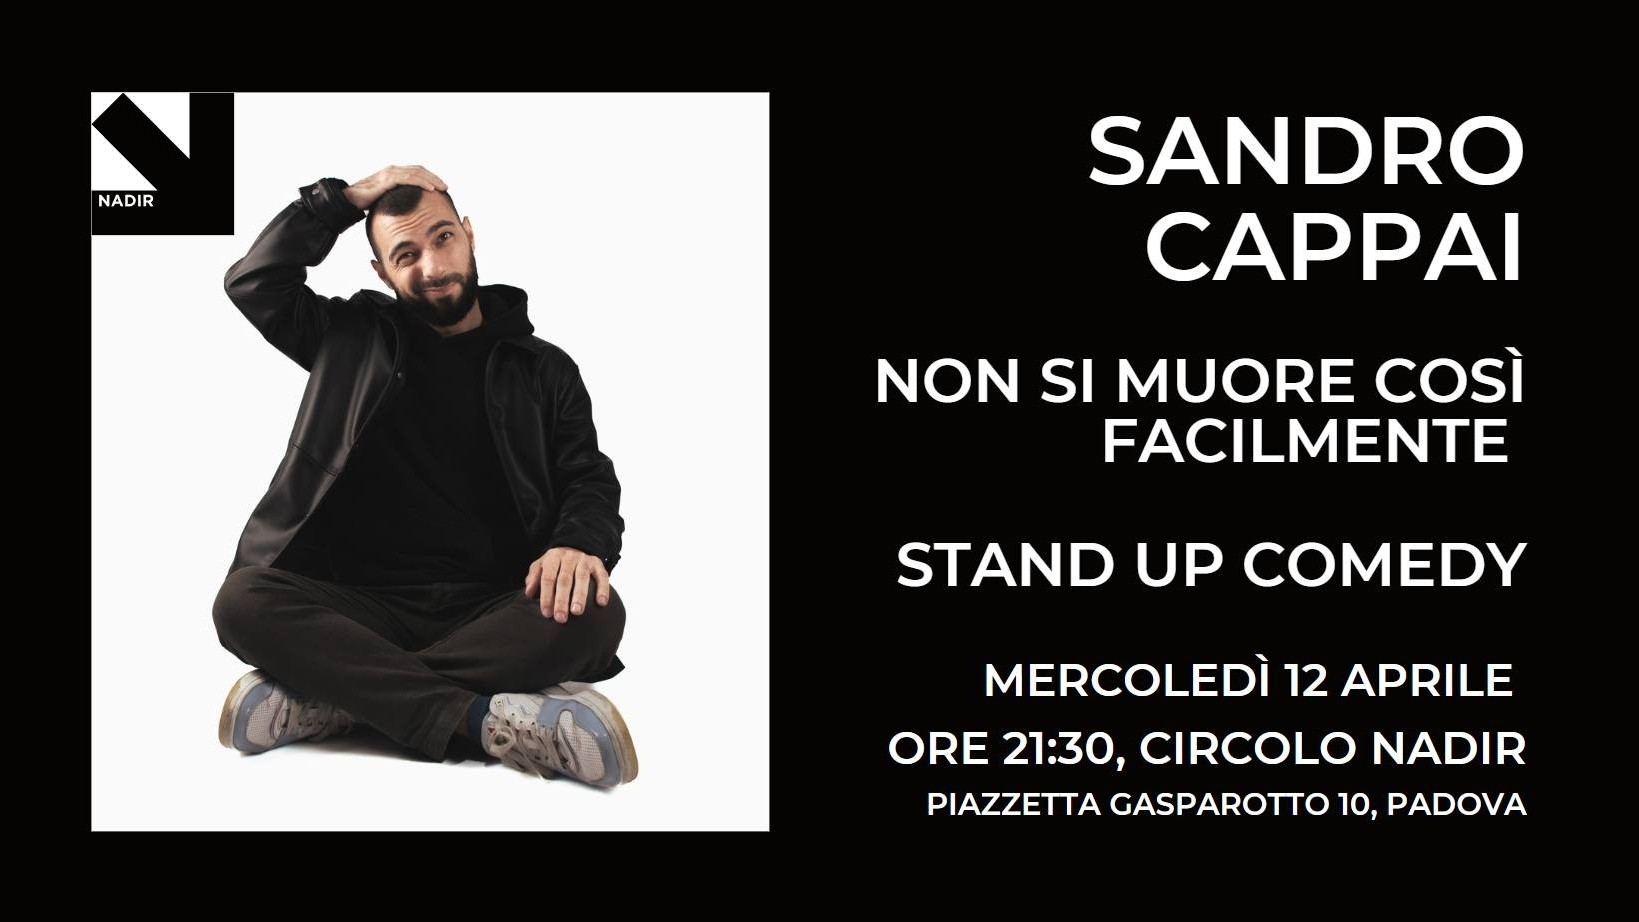 Sandro Cappai: "Non si muore così facilmente" - Stand up comedy